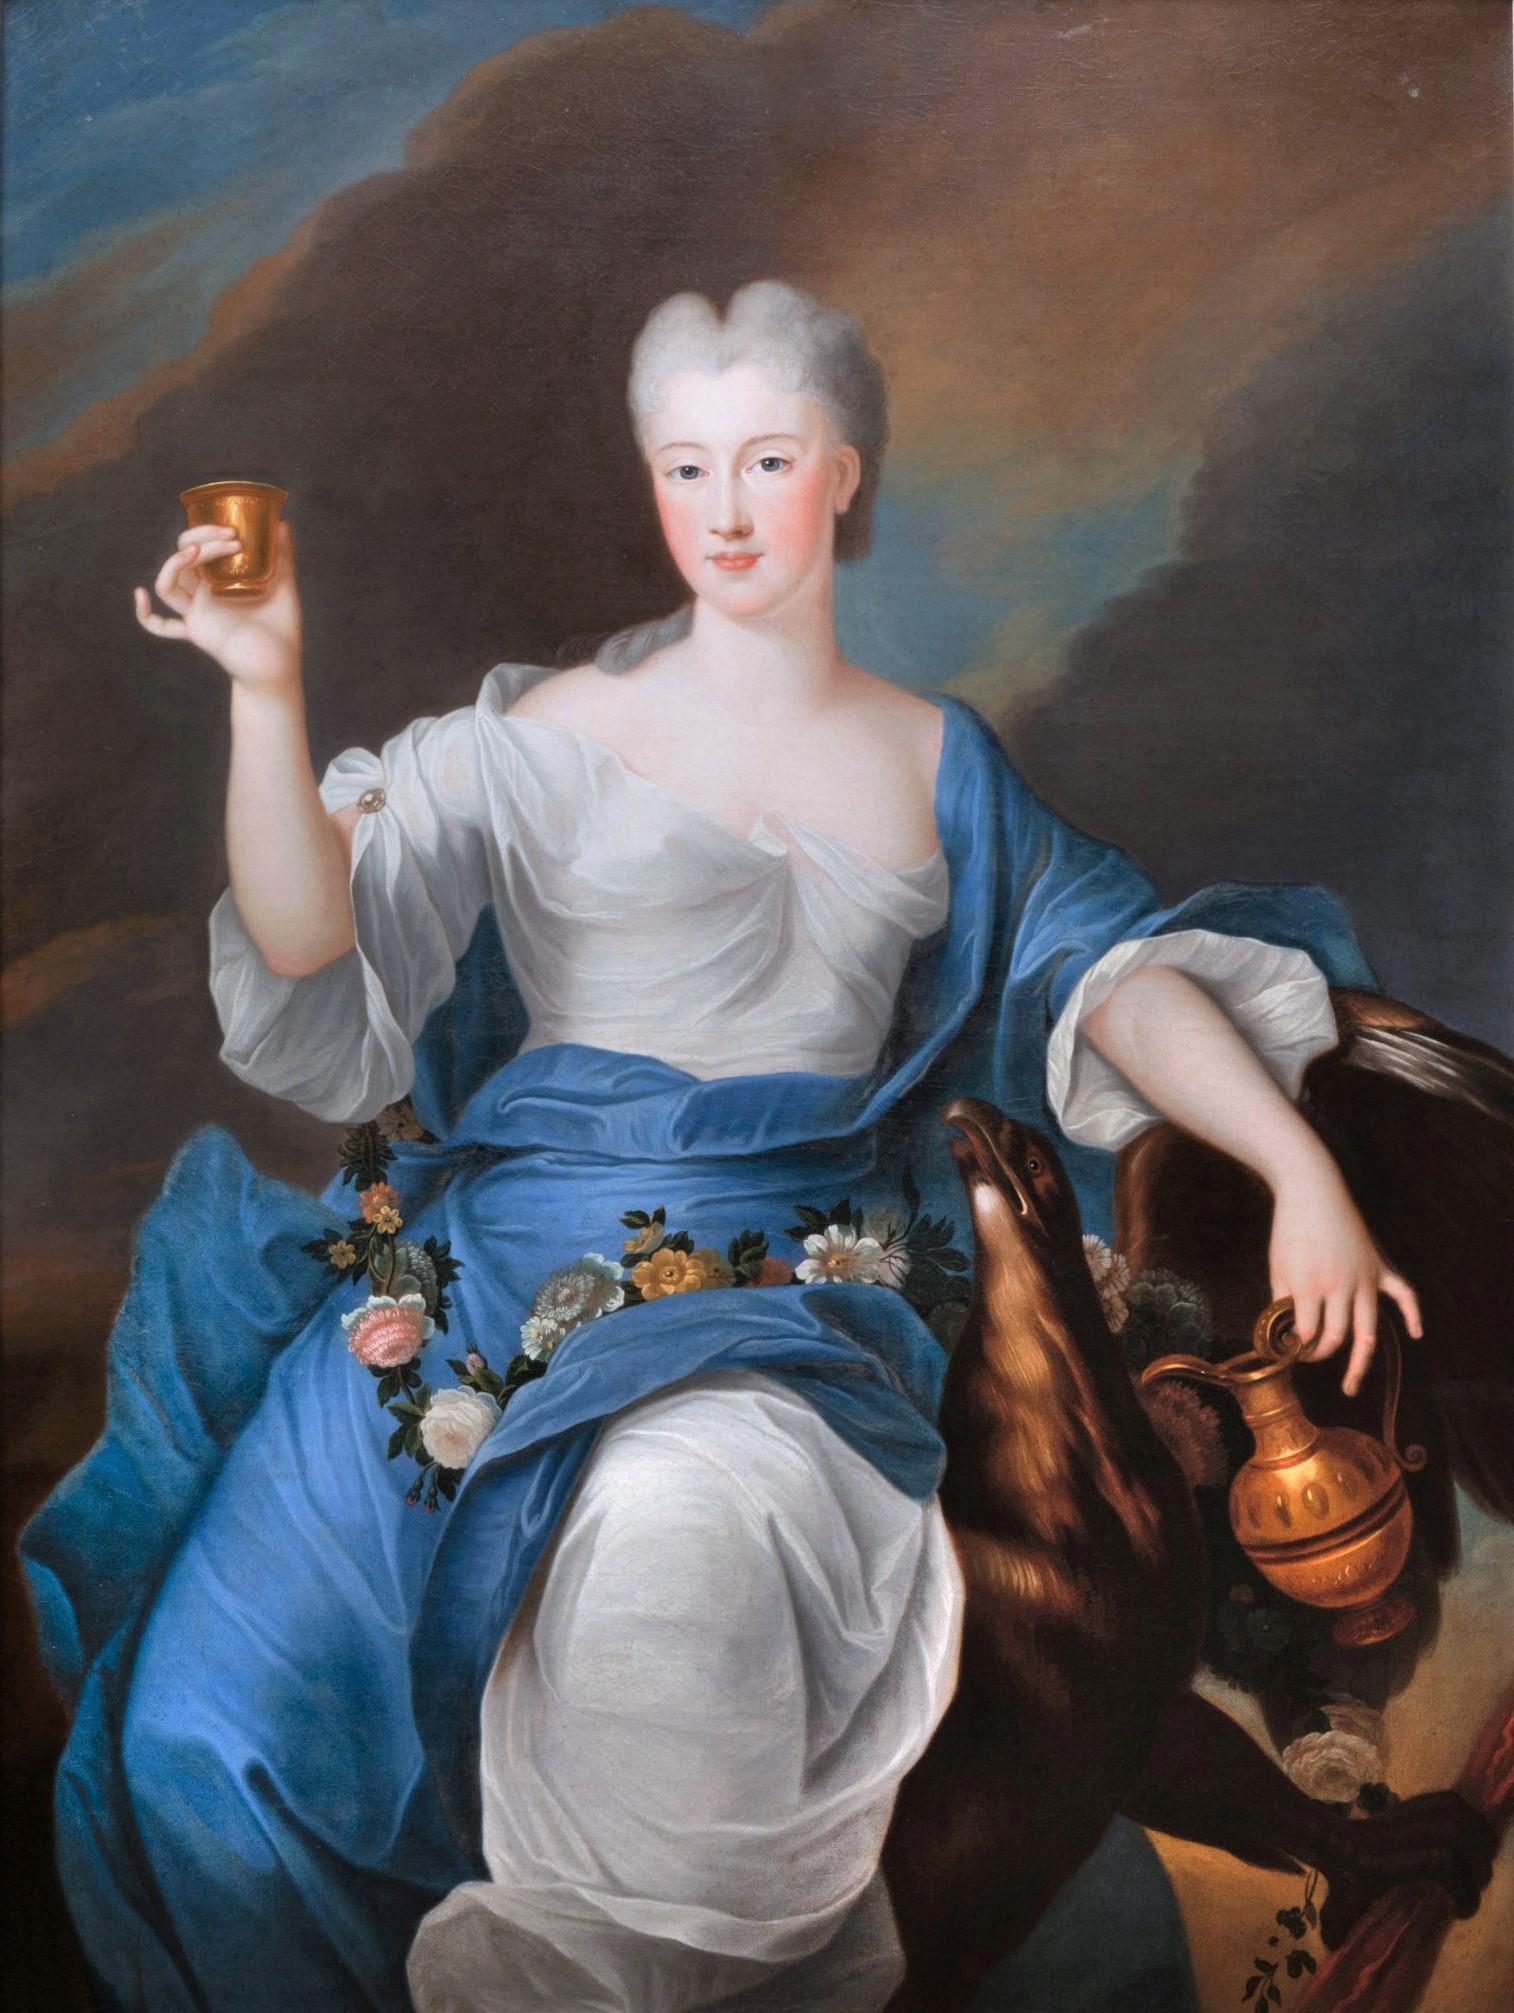 Portrait de la princesse de Bourbon en Hébé
Pierre Gobert, vers 1730
Portrait présumé d'Elisabeth Thérèse Alexandrine de Bourbon-Condé, Mademoiselle de Sens, représentée sous les traits de la déesse Hébé enlevée par Zeus, transformée en